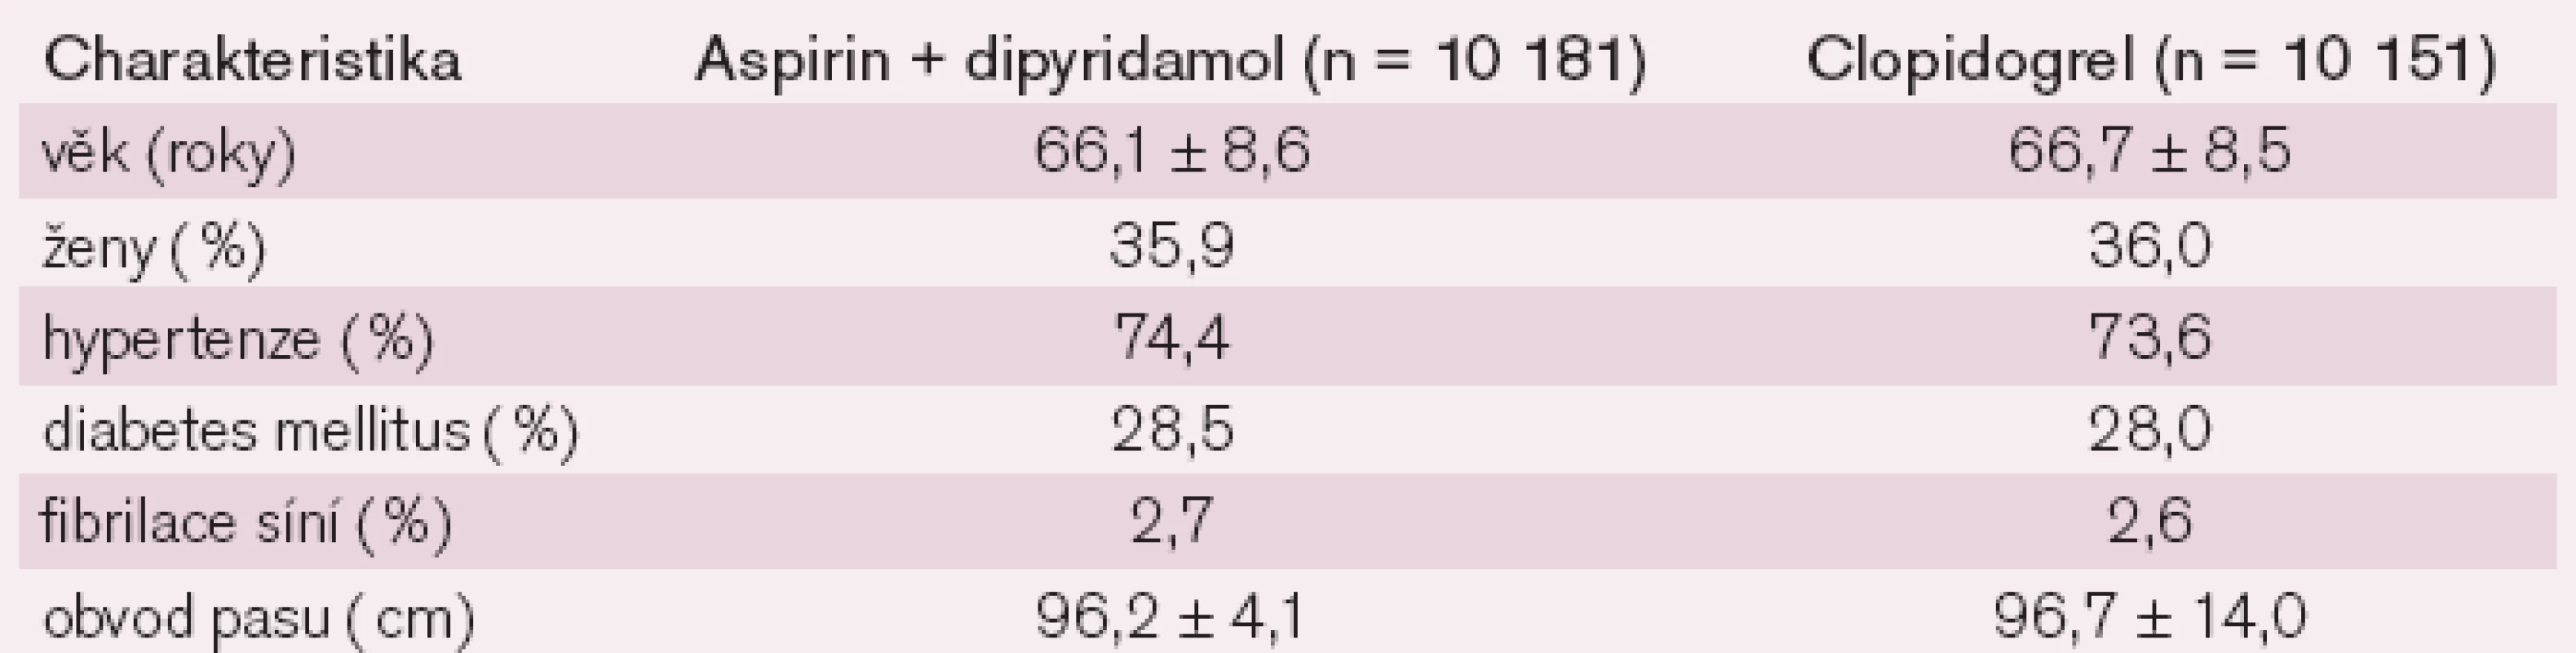 Vstupní charakteristika ve studii PRoFESS – rozdělení na aspirin + dipyridamol vs clopidogrel.